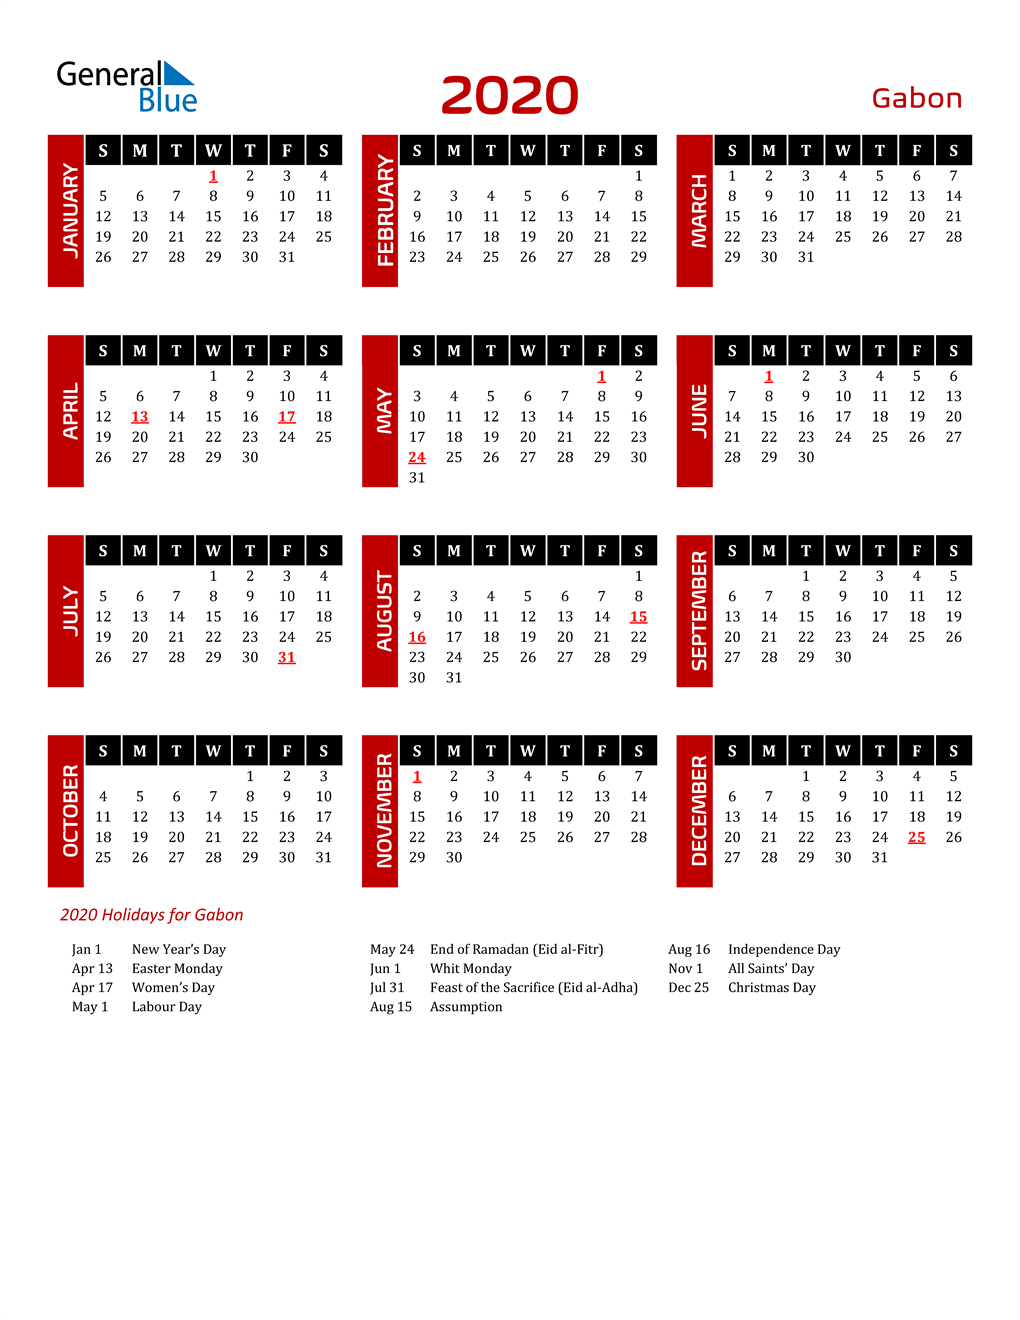 Download Gabon 2020 Calendar